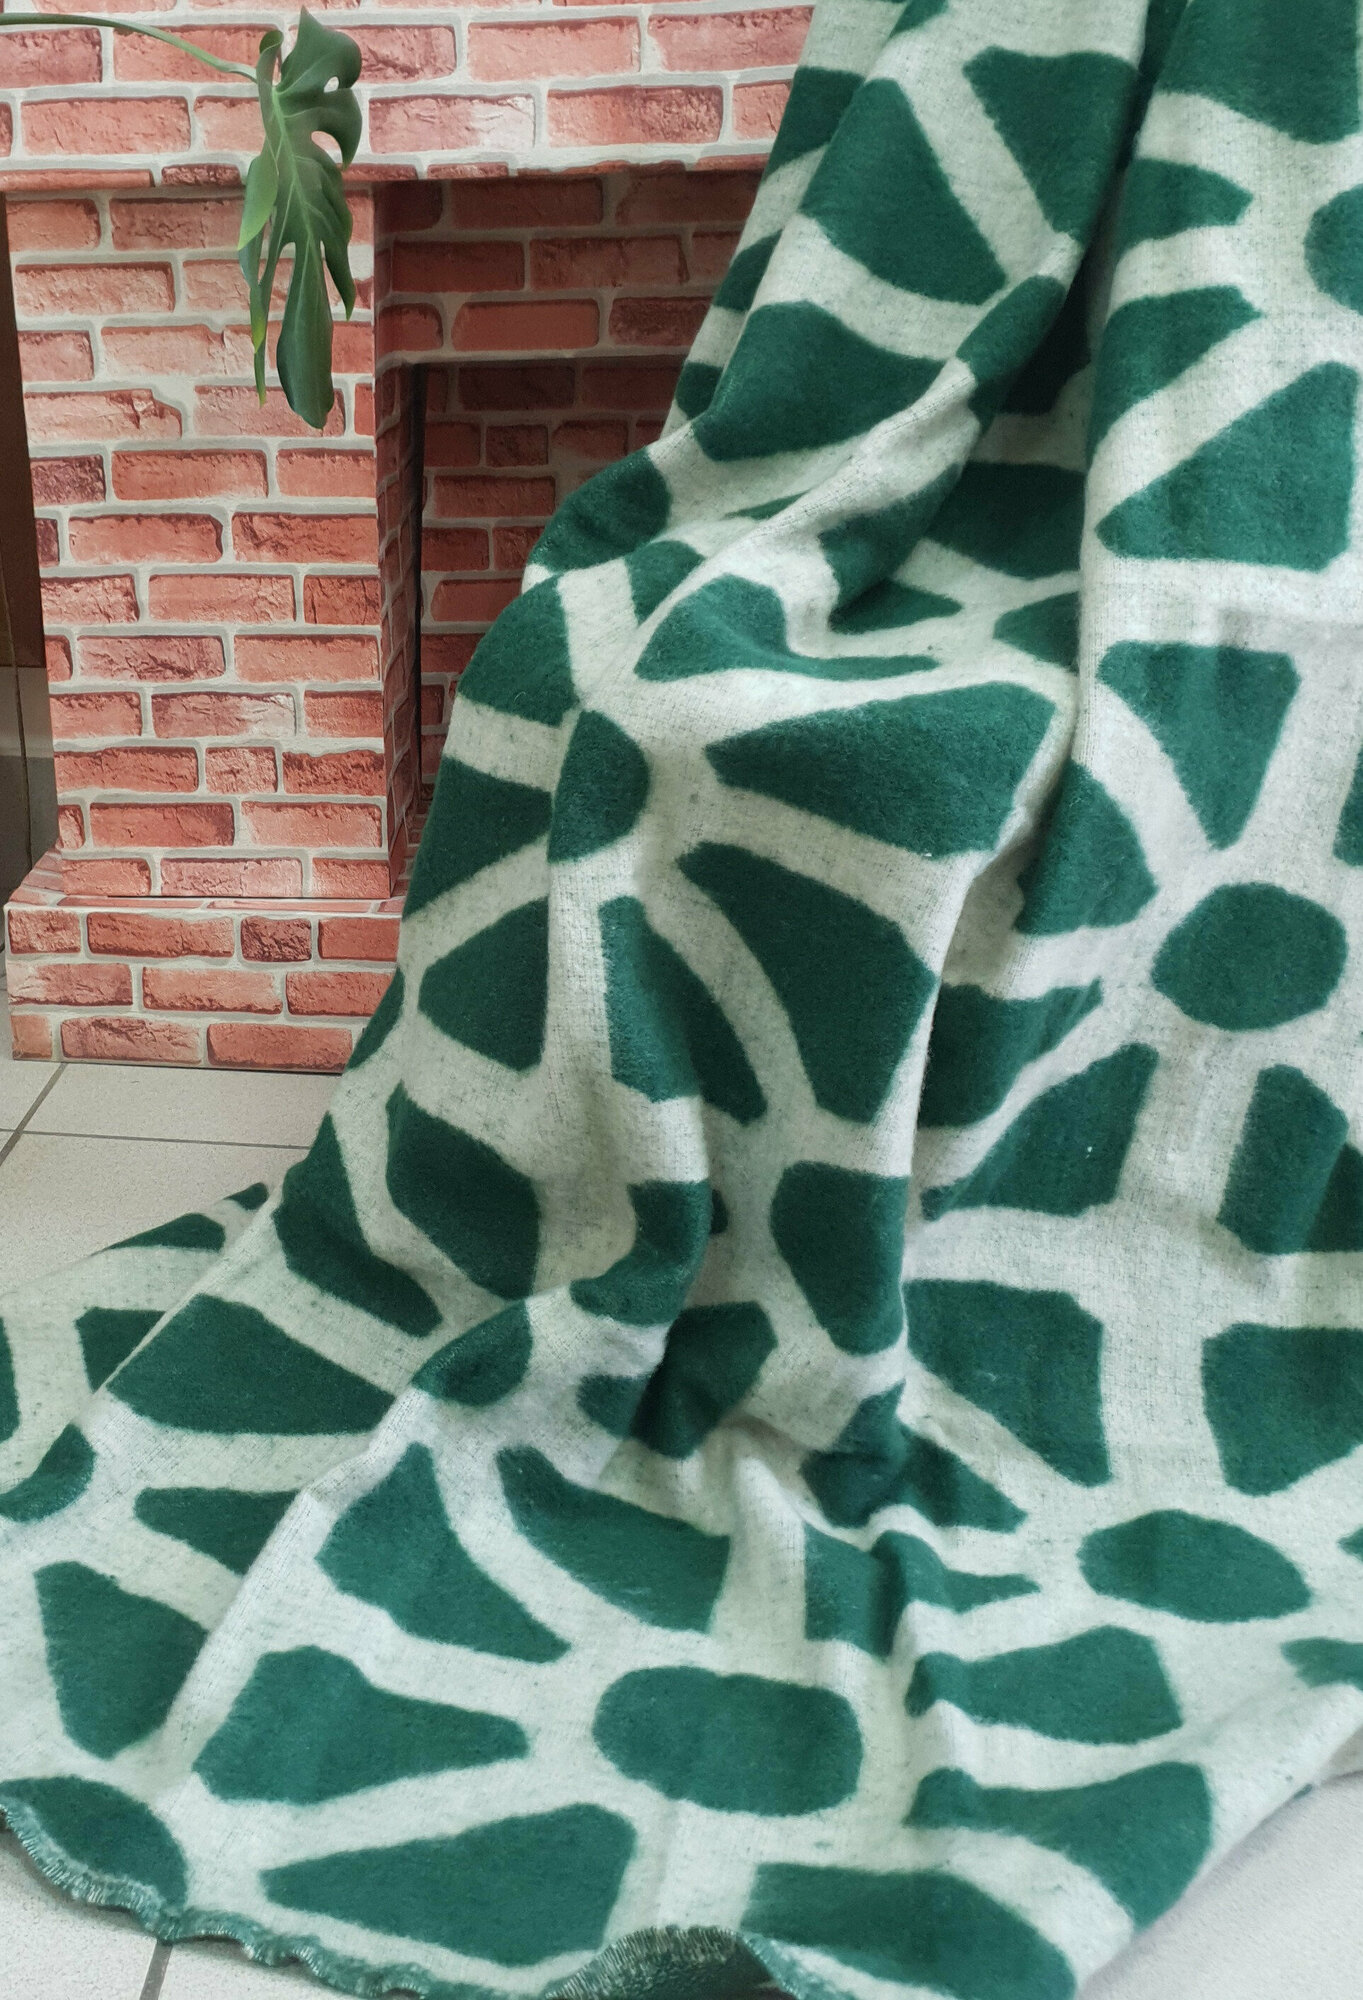 Одеяло п-ш 30% шерсть жаккардовое 140*200 пл. 420 зеленый лучи